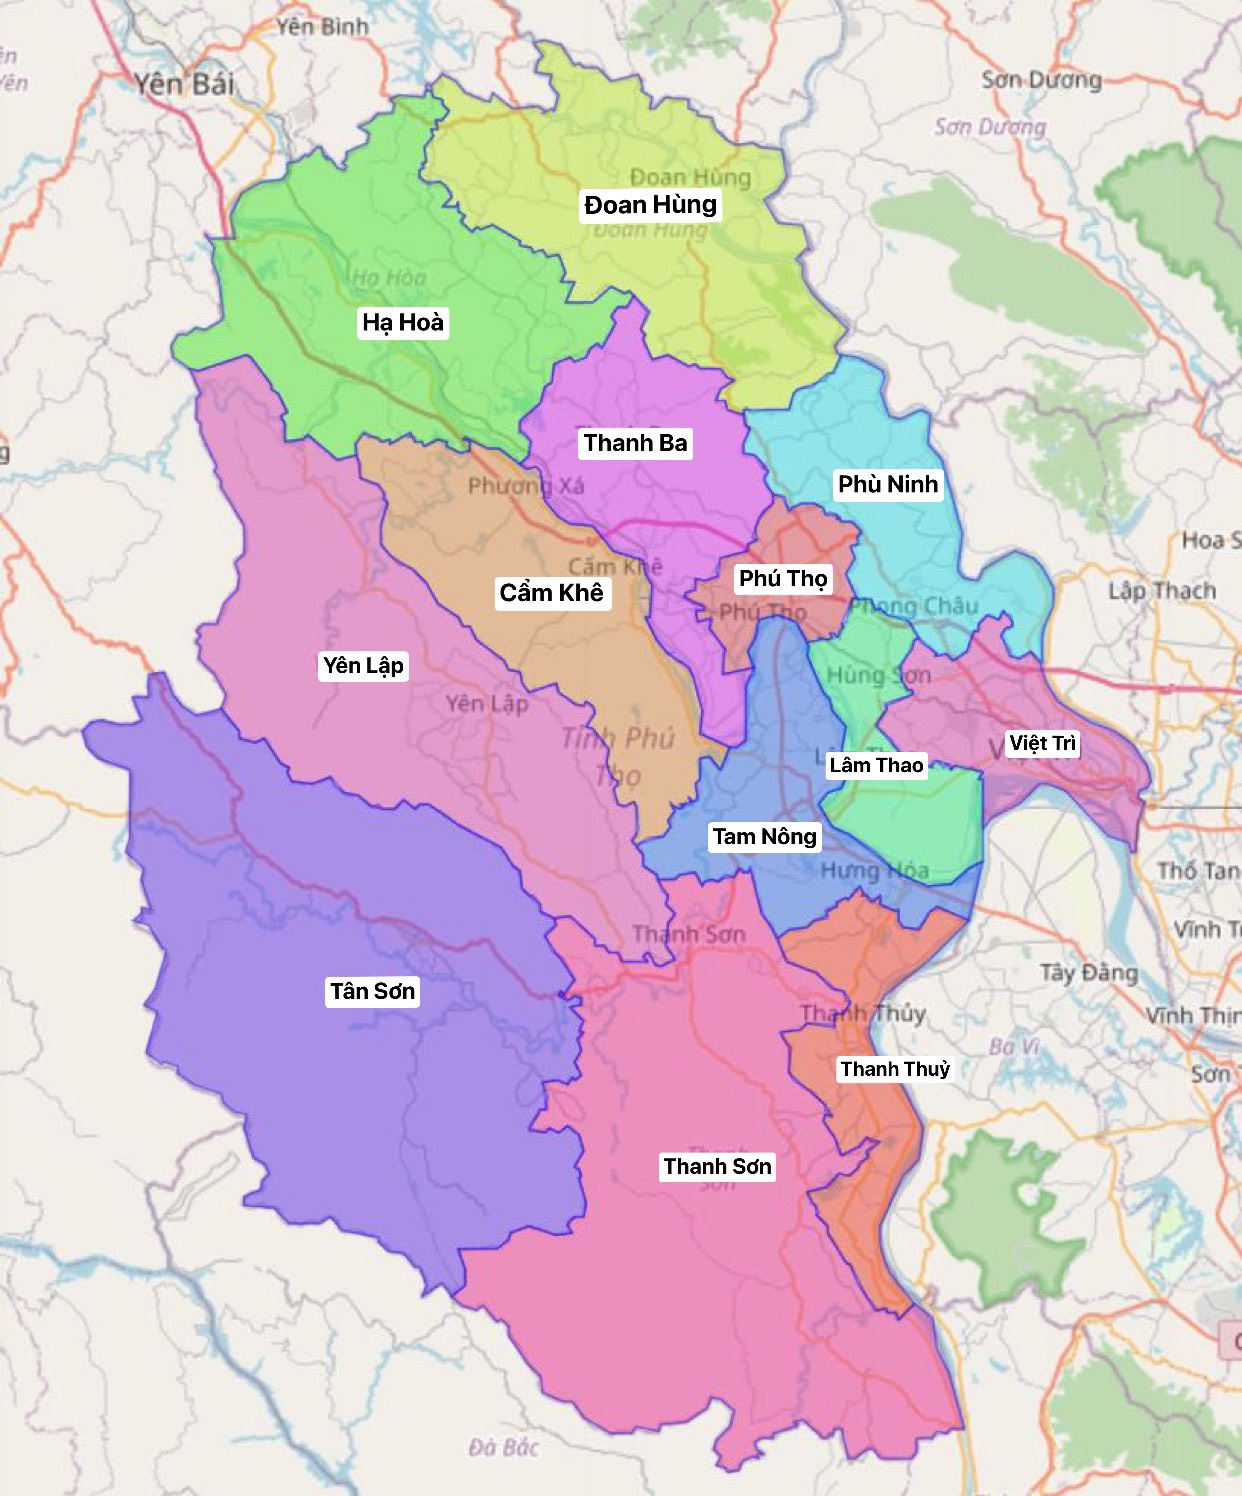 Bản đồ hành chính huyện Lâm Thao đã được cập nhật đến năm 2024 sẽ giúp bạn dễ dàng tìm kiếm thông tin về các khu vực, địa điểm và dịch vụ hành chính tại huyện. Hãy khám phá những nét văn hóa độc đáo của huyện Lâm Thao thông qua bản đồ này.